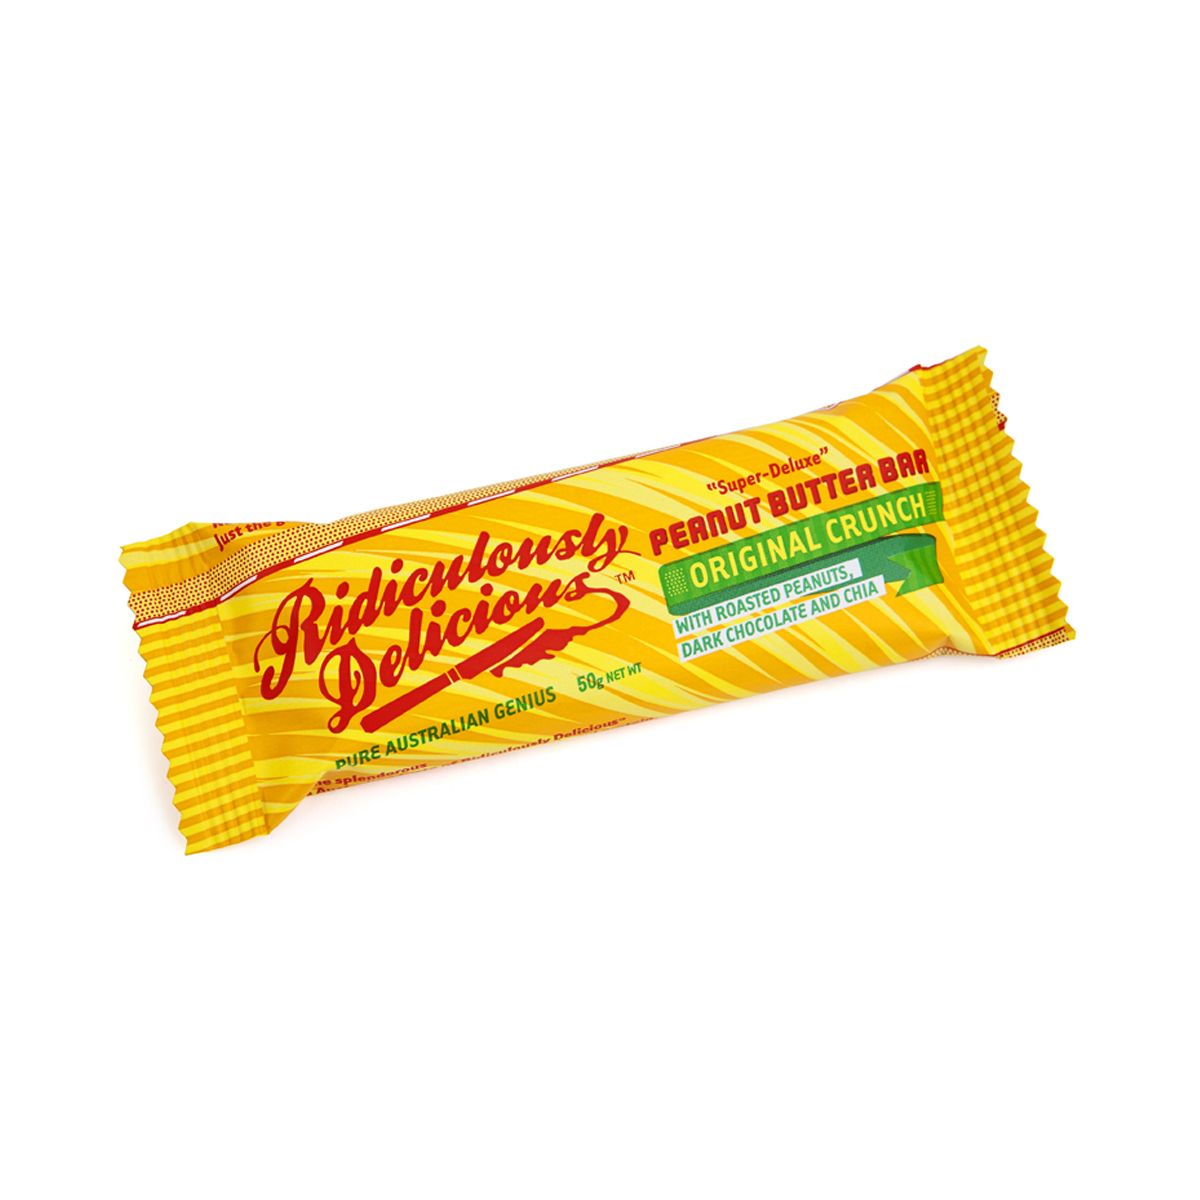 Peanut Butter Bar (Original crunch)